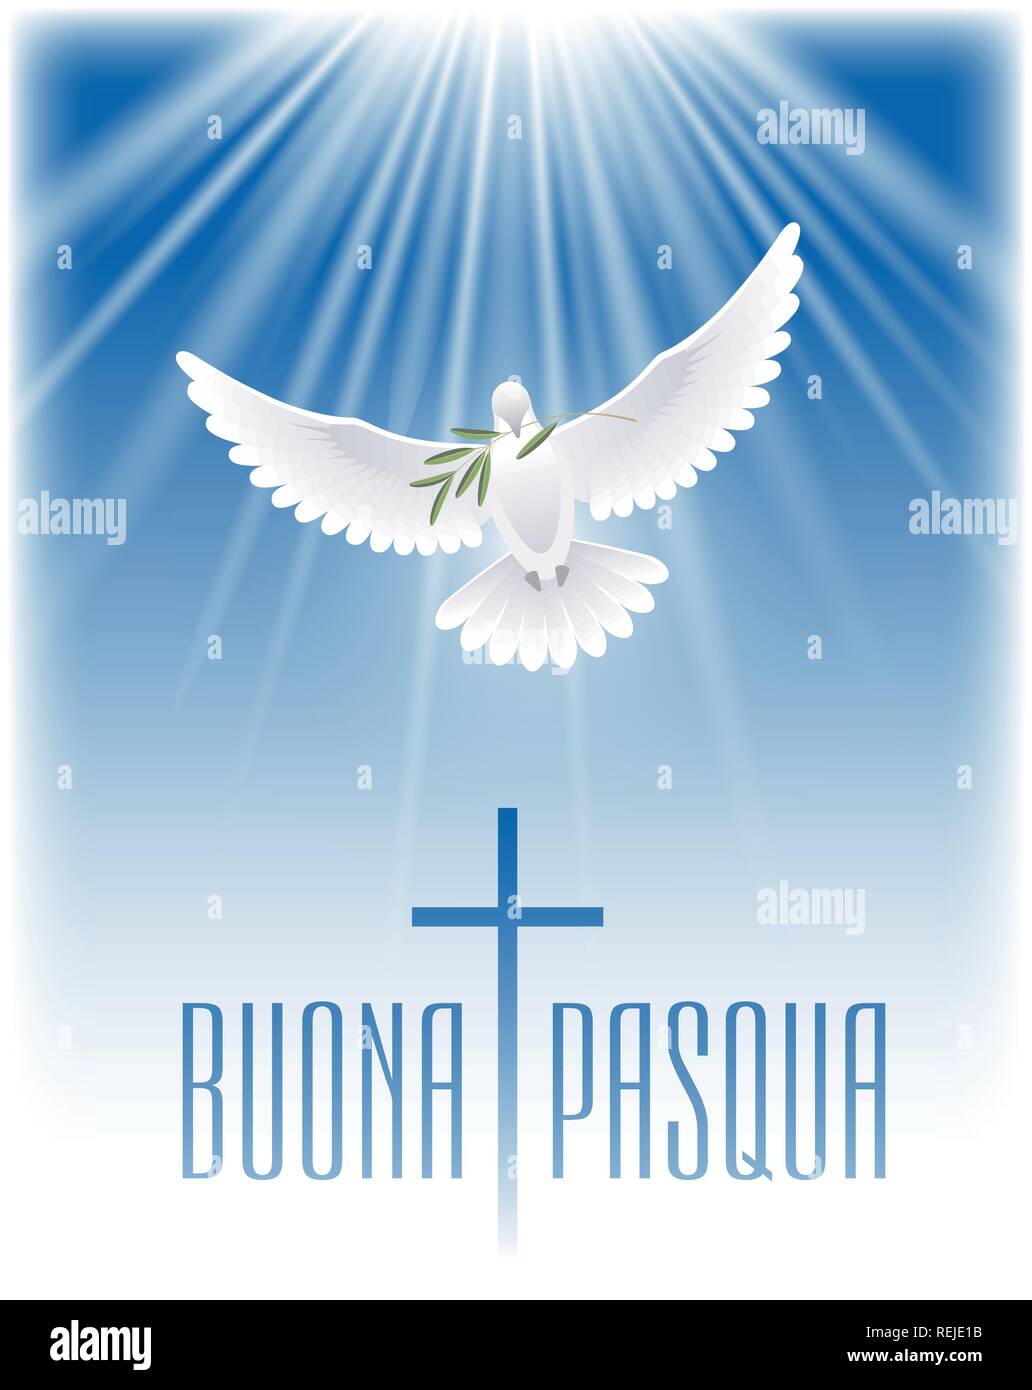 Joyeuses Pâques en italien. Carte de souhaits avec croix, colombe blanche et branche d'olivier. Vector illustration. Illustration de Vecteur